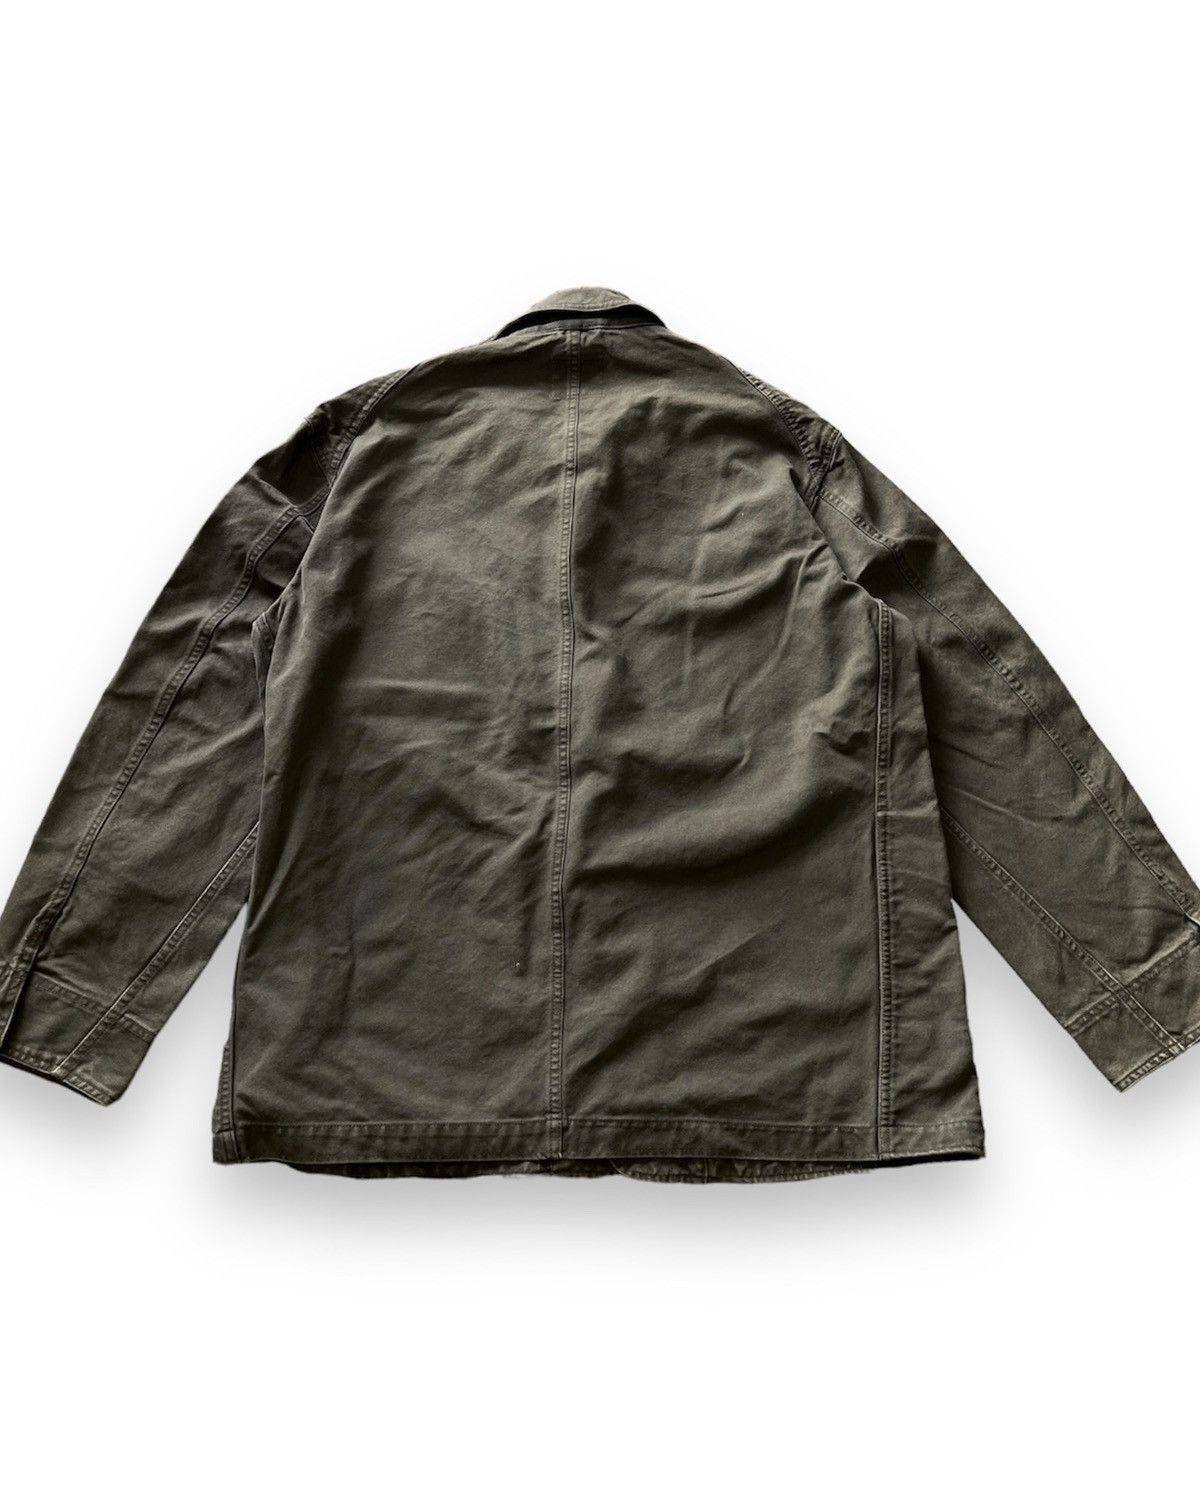 Uniqlo Chore Jacket Japan Size XL - 2